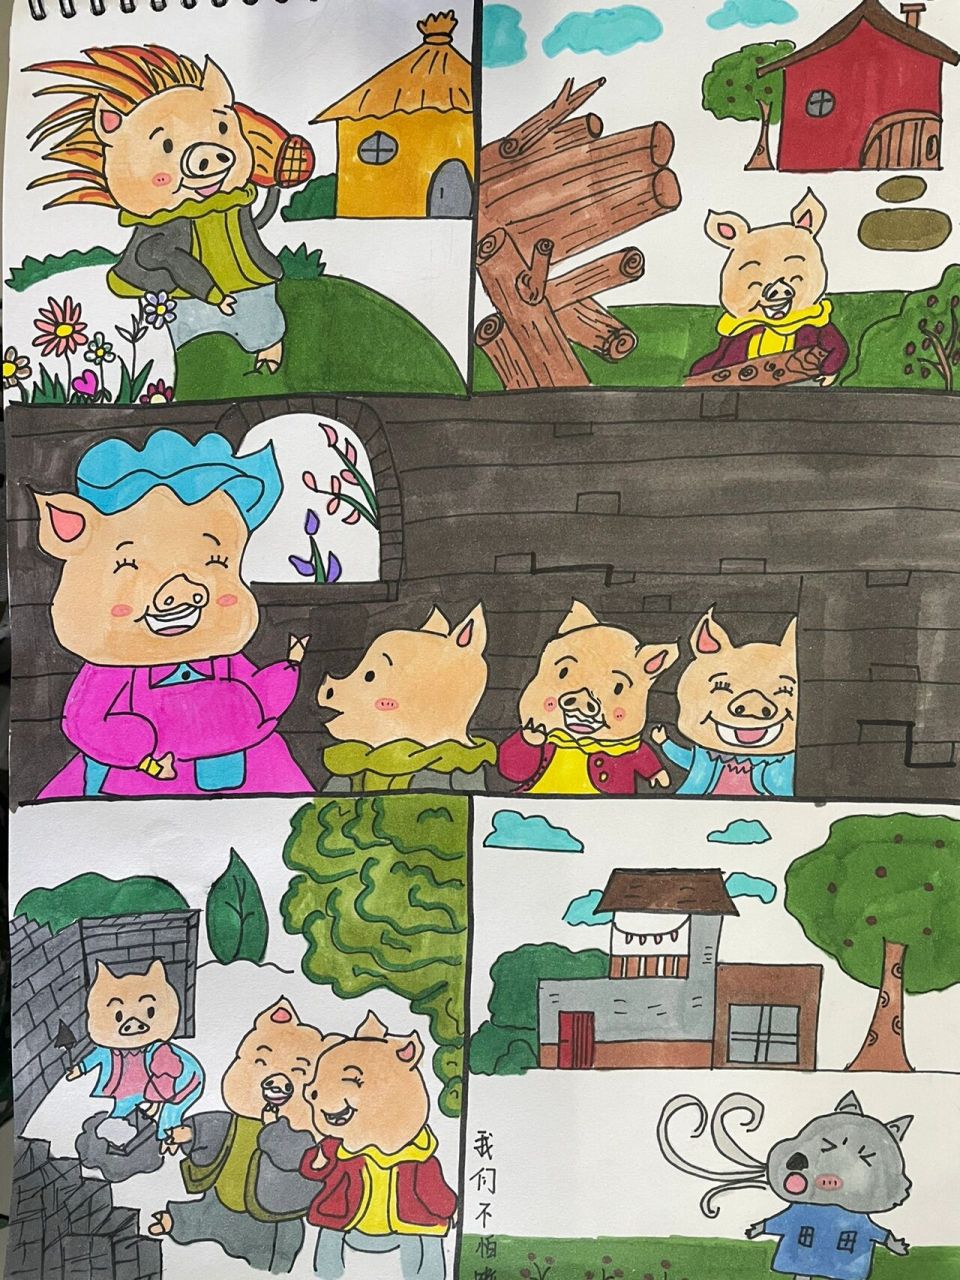 三只小猪卡通图片简画图片